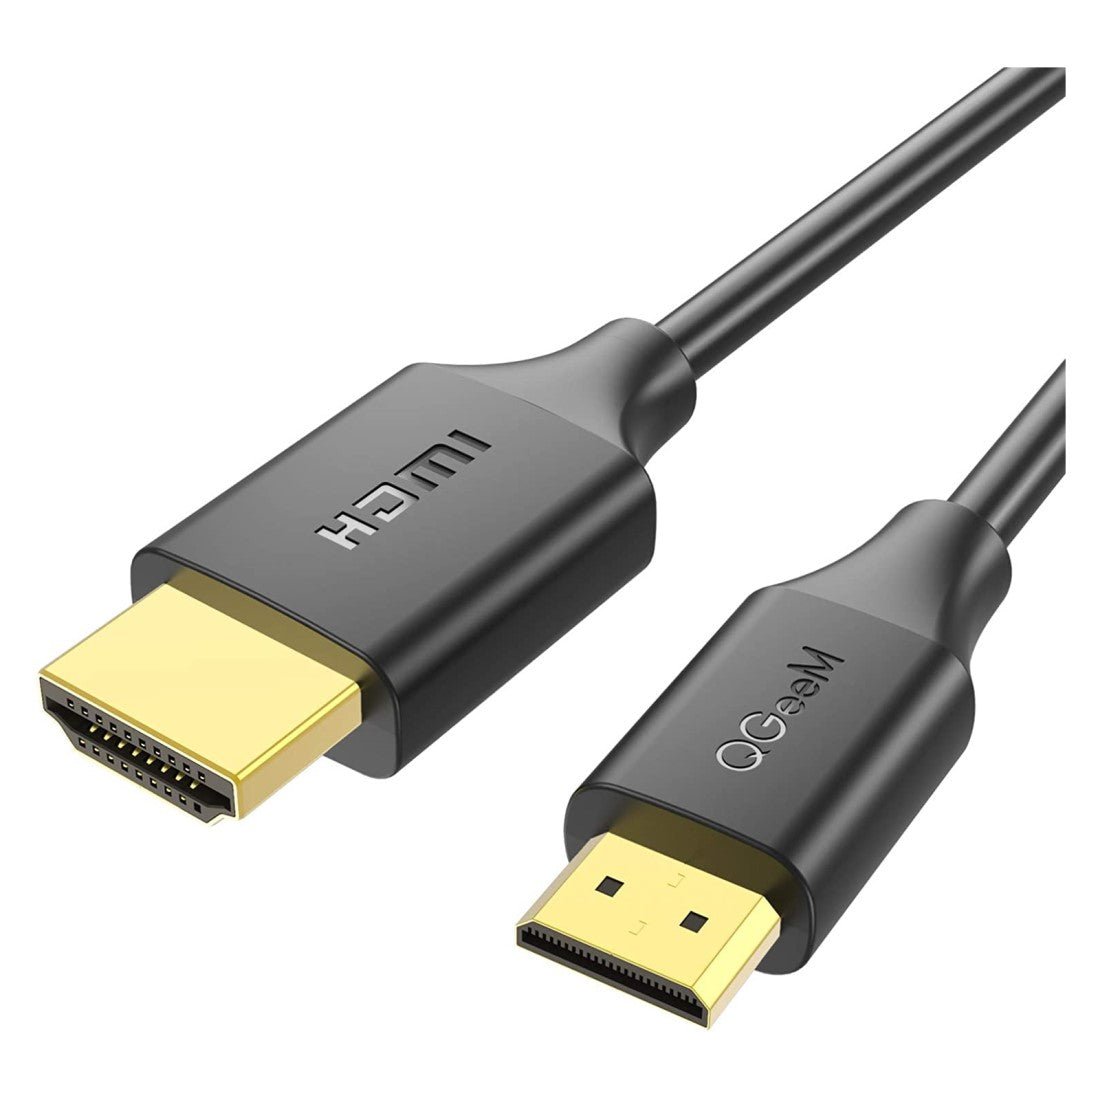 What are HDMI, HDMI Mini & HDMI Micro Cables?